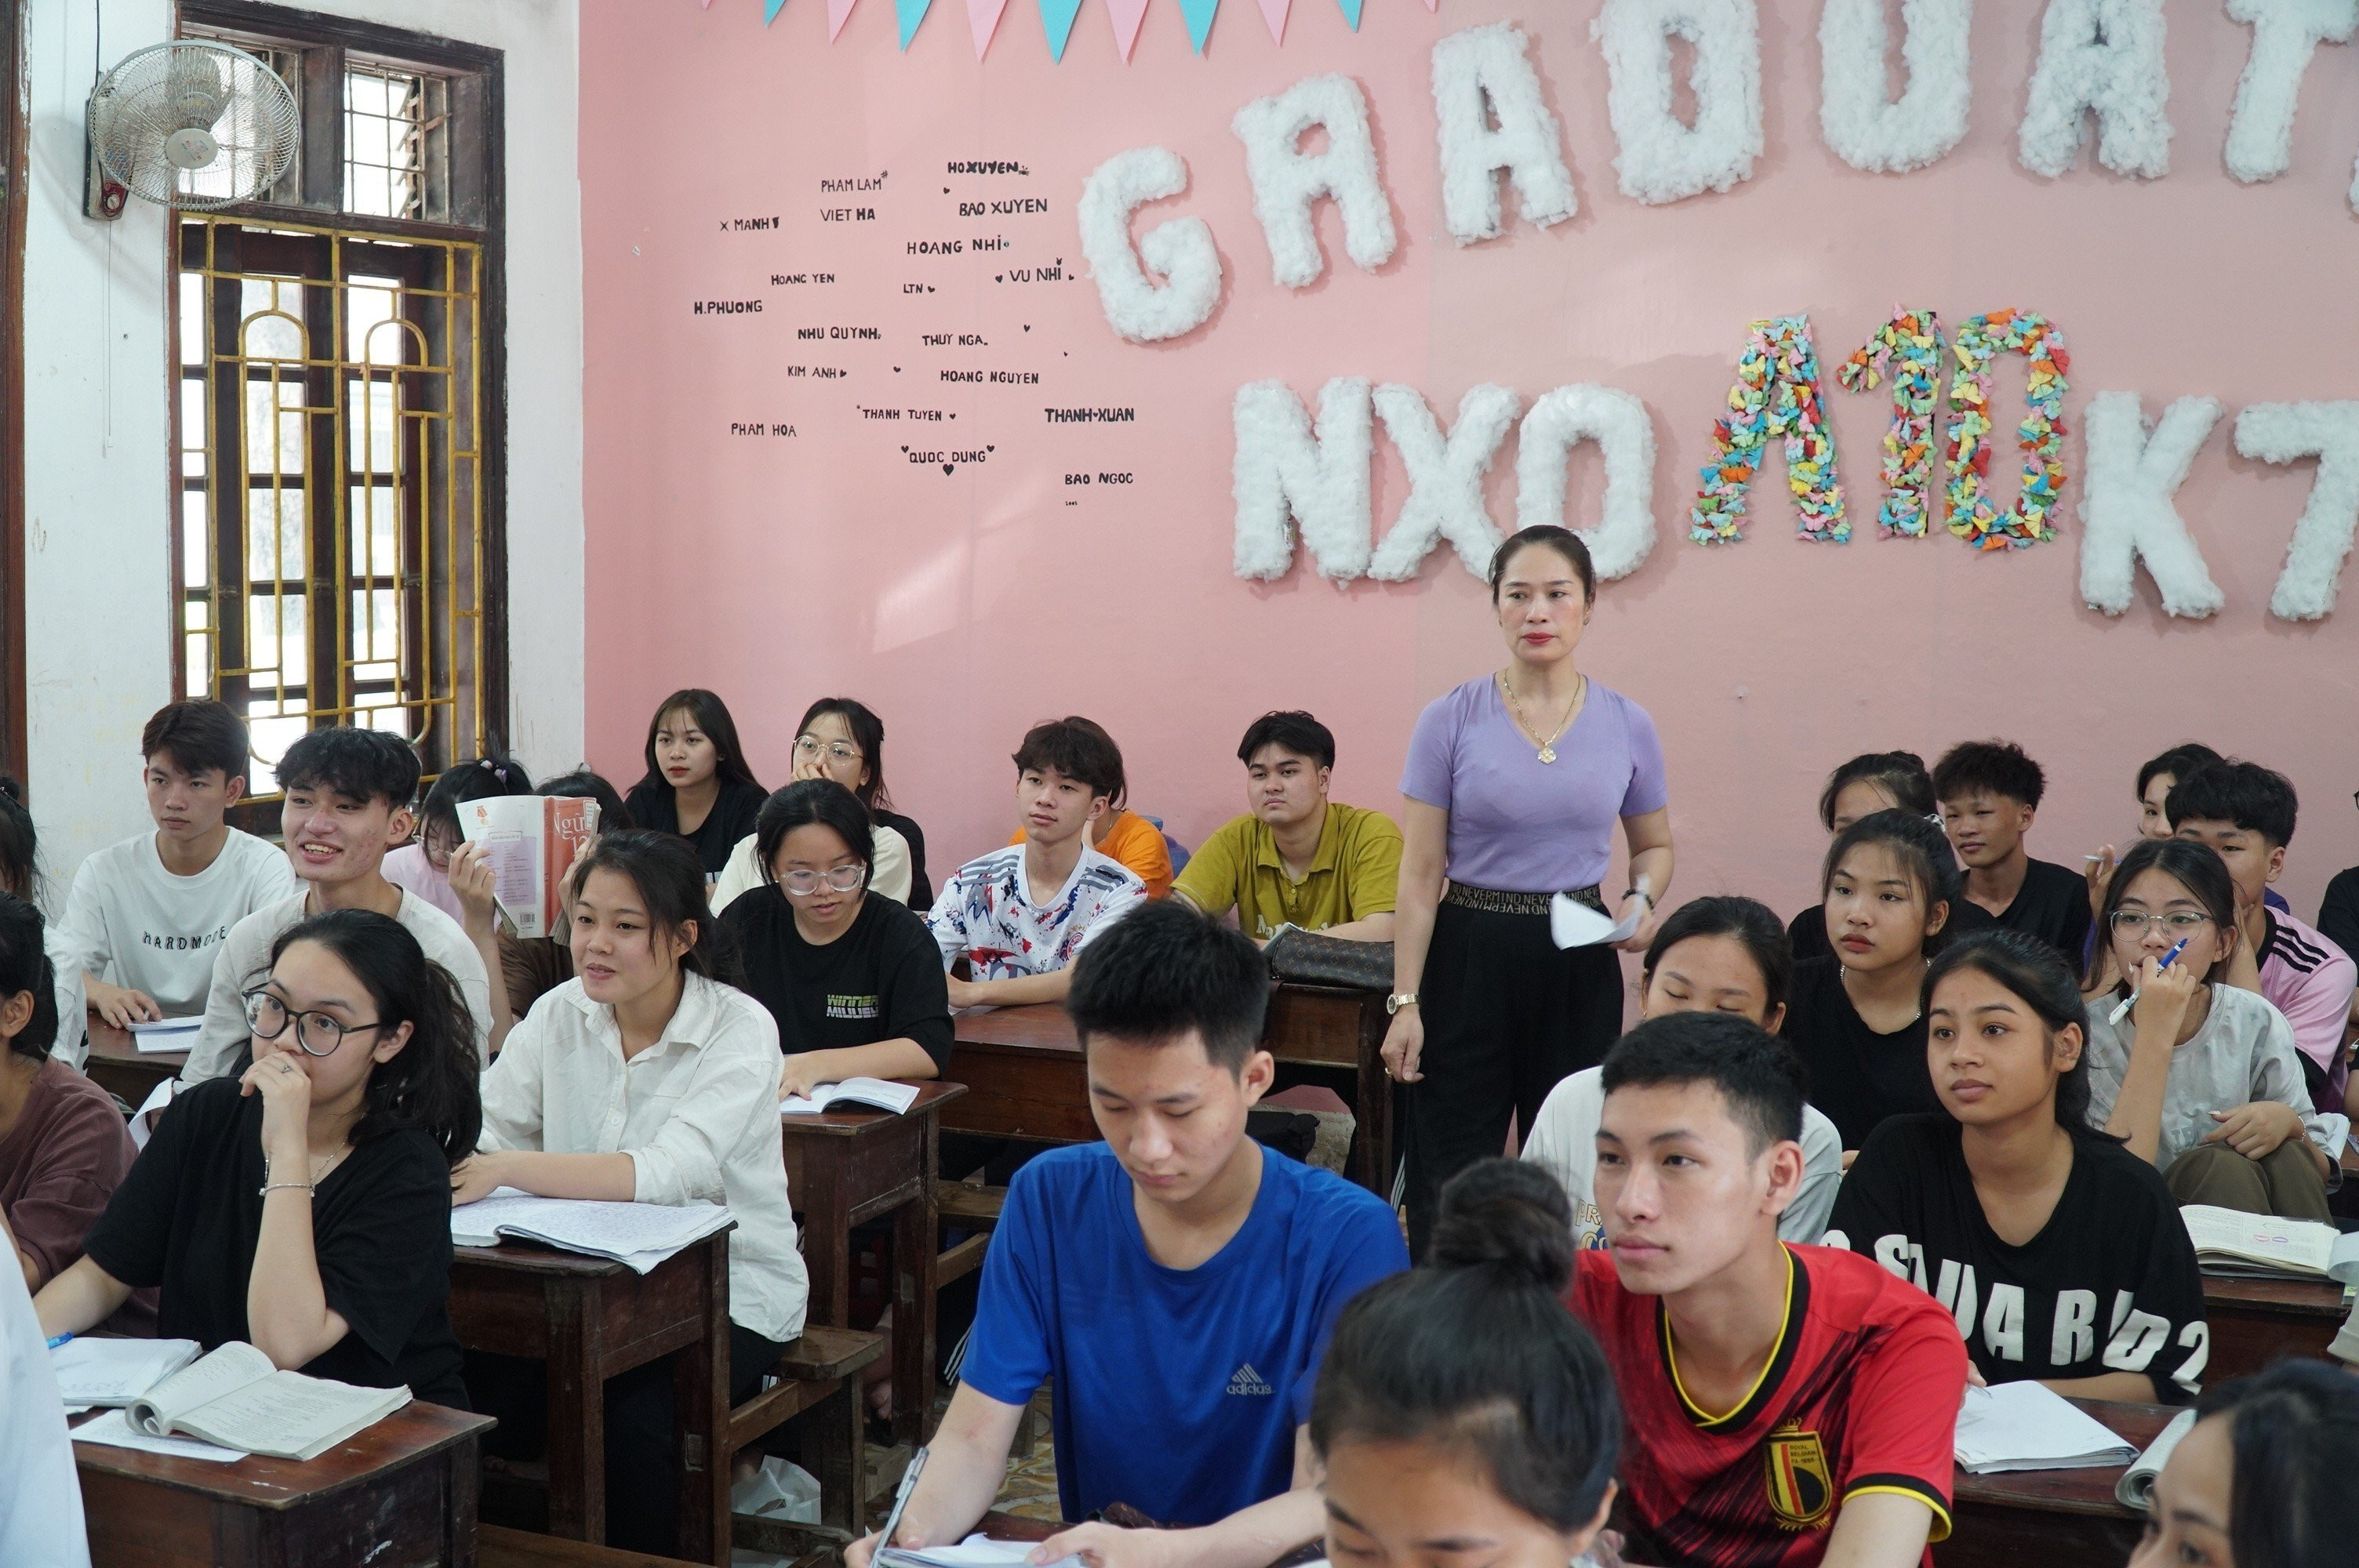 bna_Tiết ôn tập của học sinh lớp 12 - Trường THPT Nguyễn Xuân Ôn.jpg